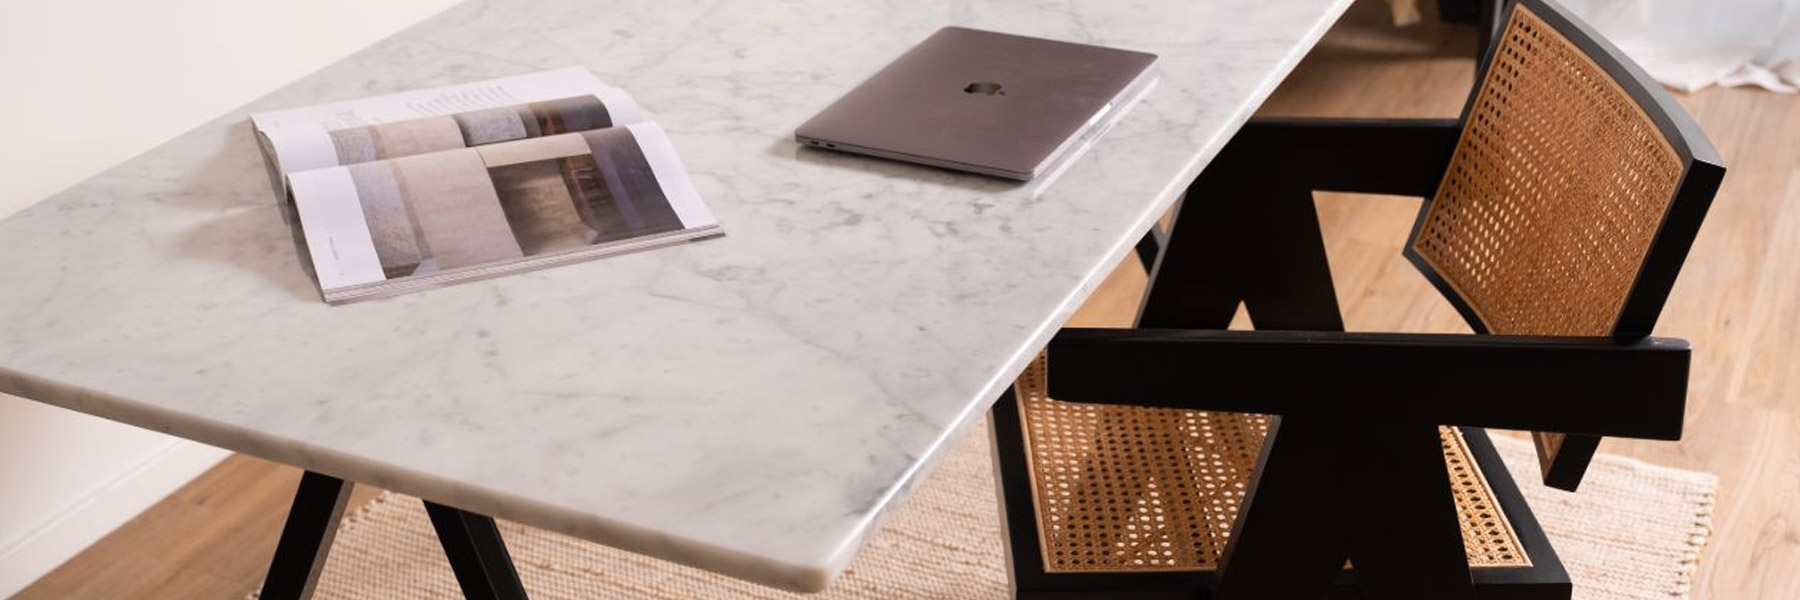 Marmeren bureau voor jouw thuiswerkplek